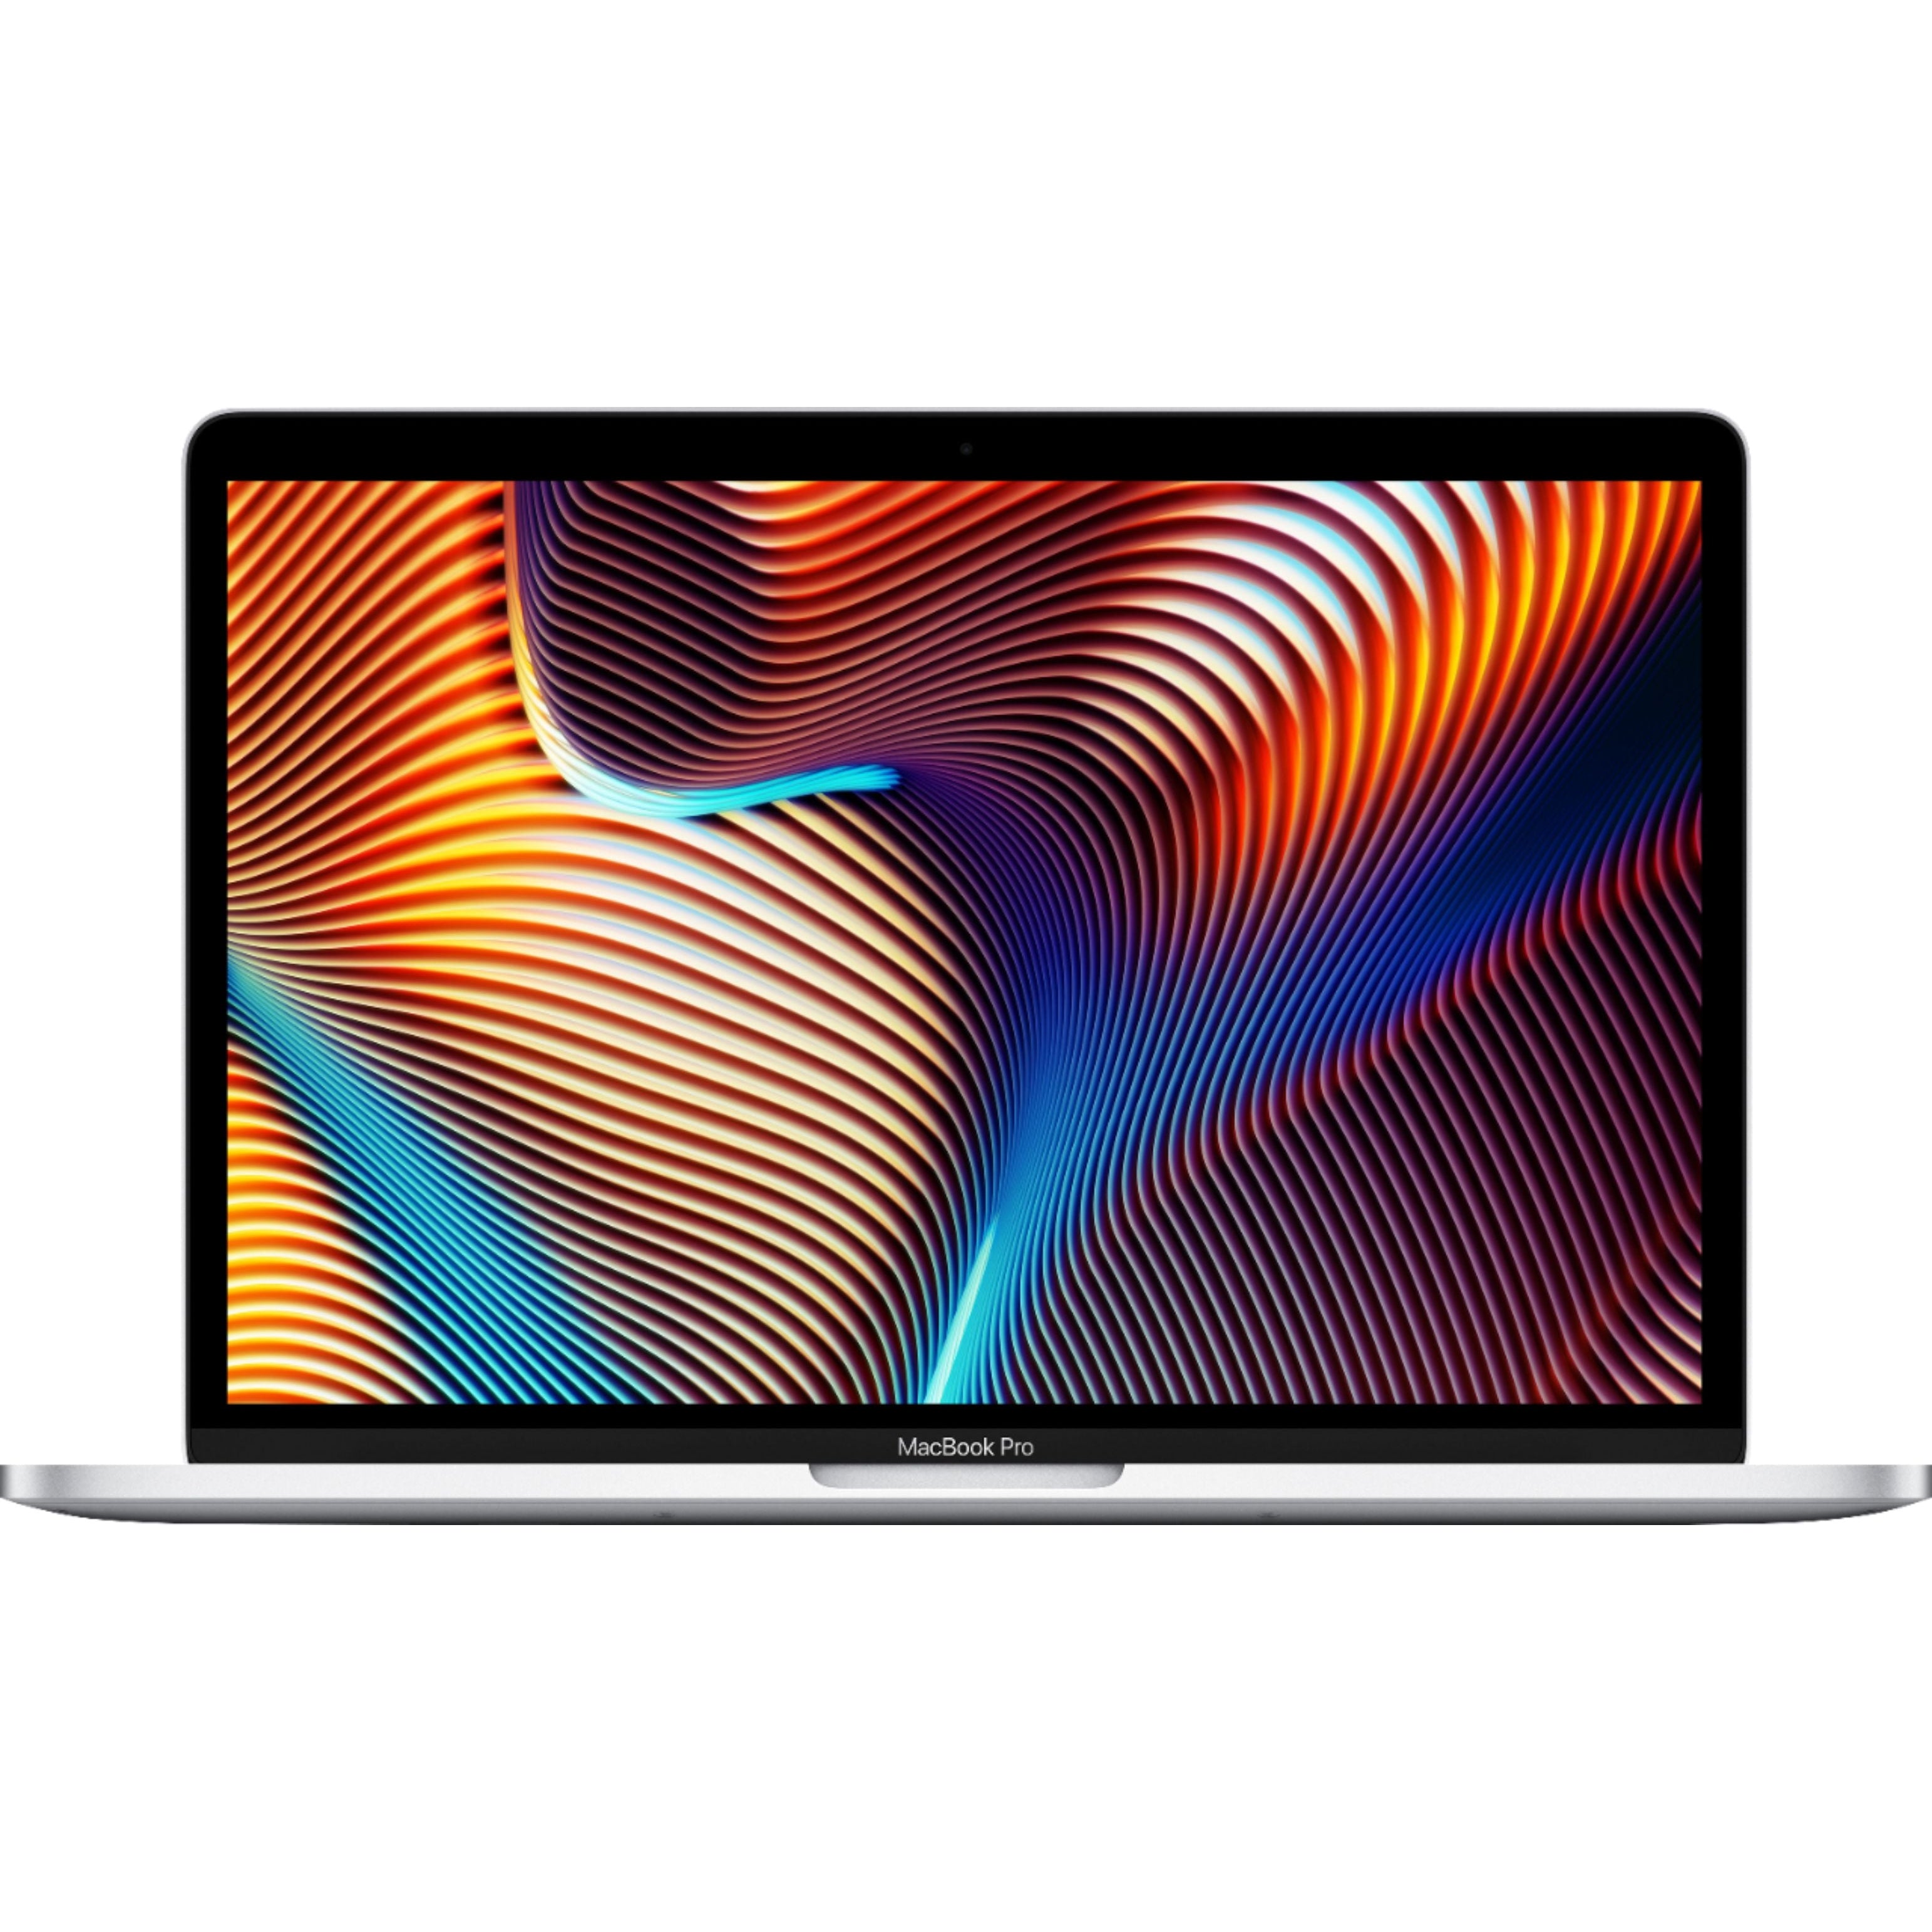 Apple MacBook Pro 13.3'' MUHQ2LL/A (2019) Intel Core i5, 8GB RAM, 128GB SSD, Silver - Refurbished Good